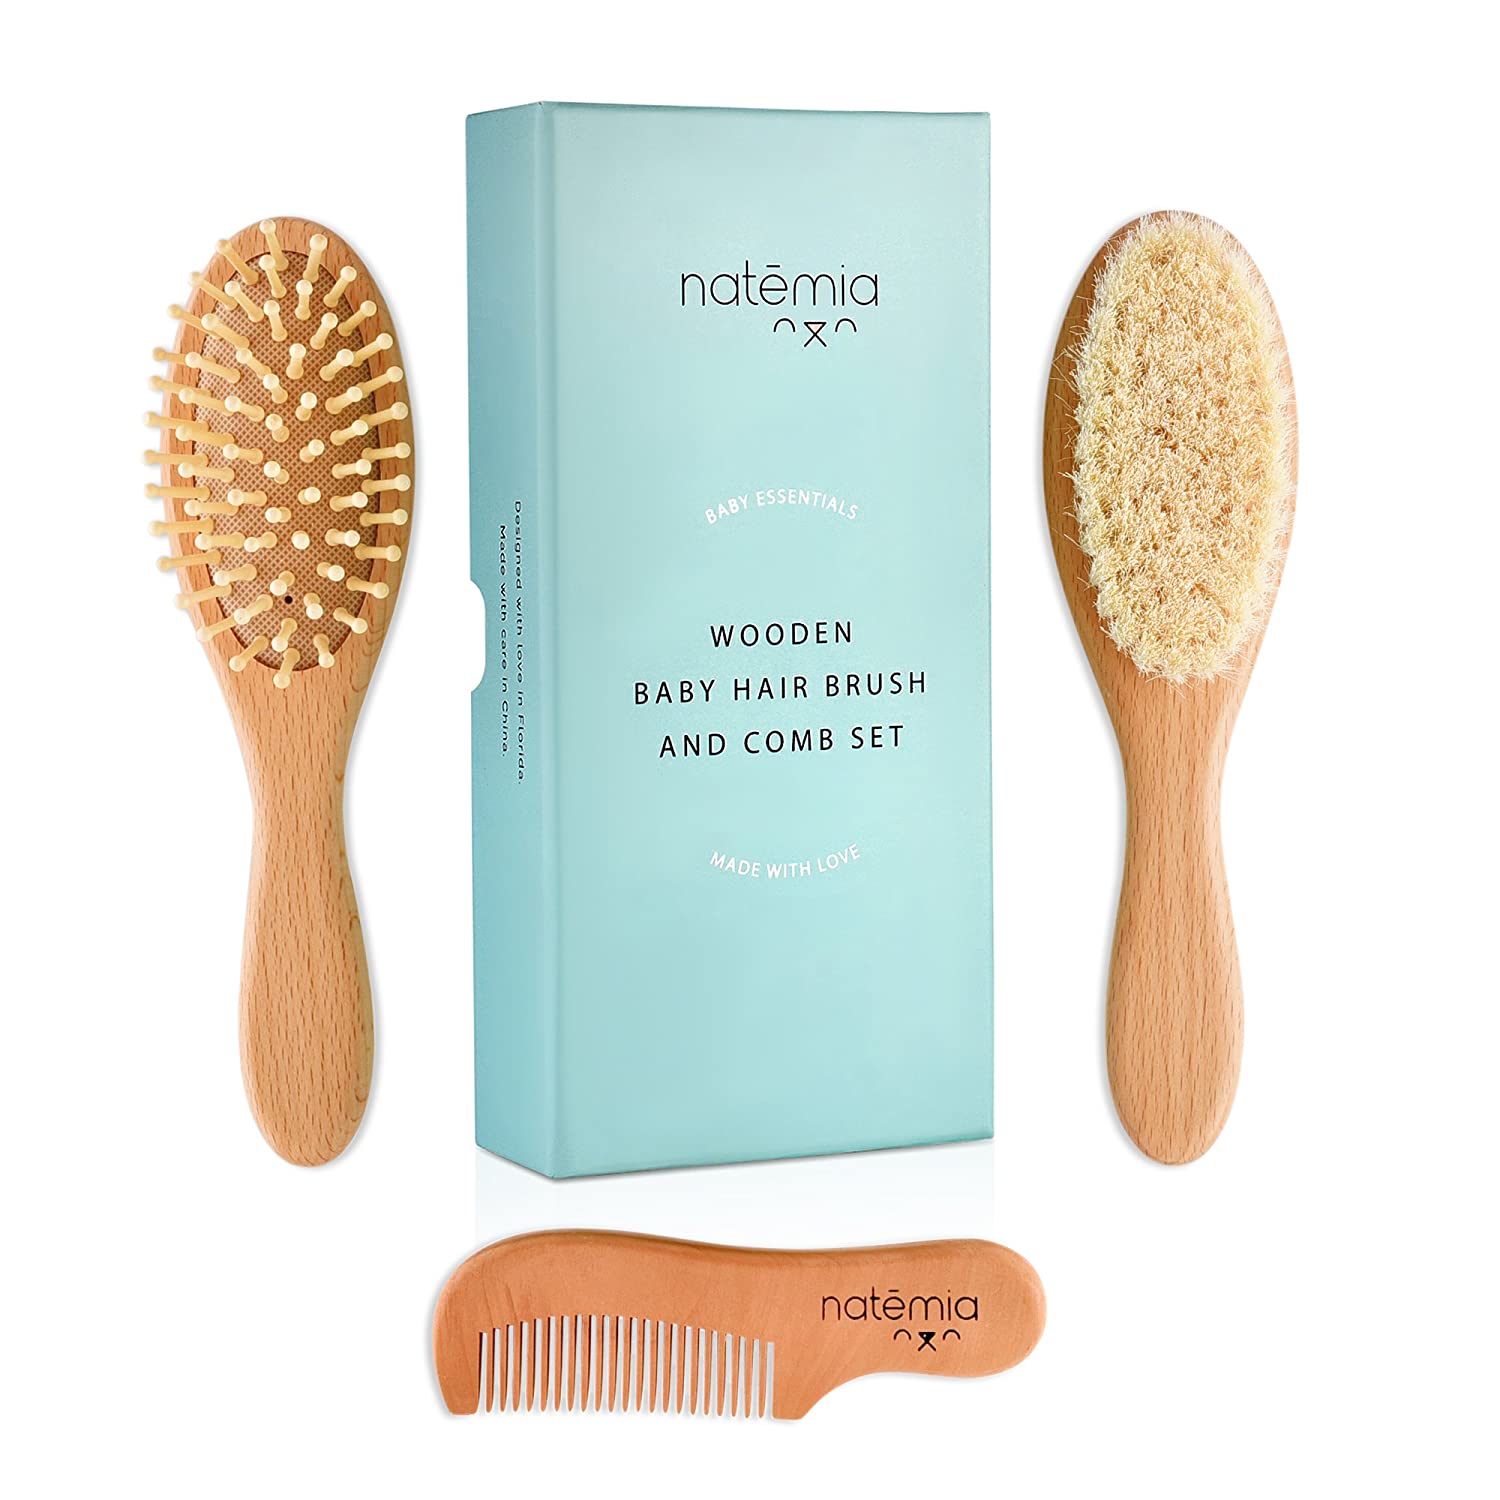 Natemia Premium Wooden Baby Hair Brush and Comb Set